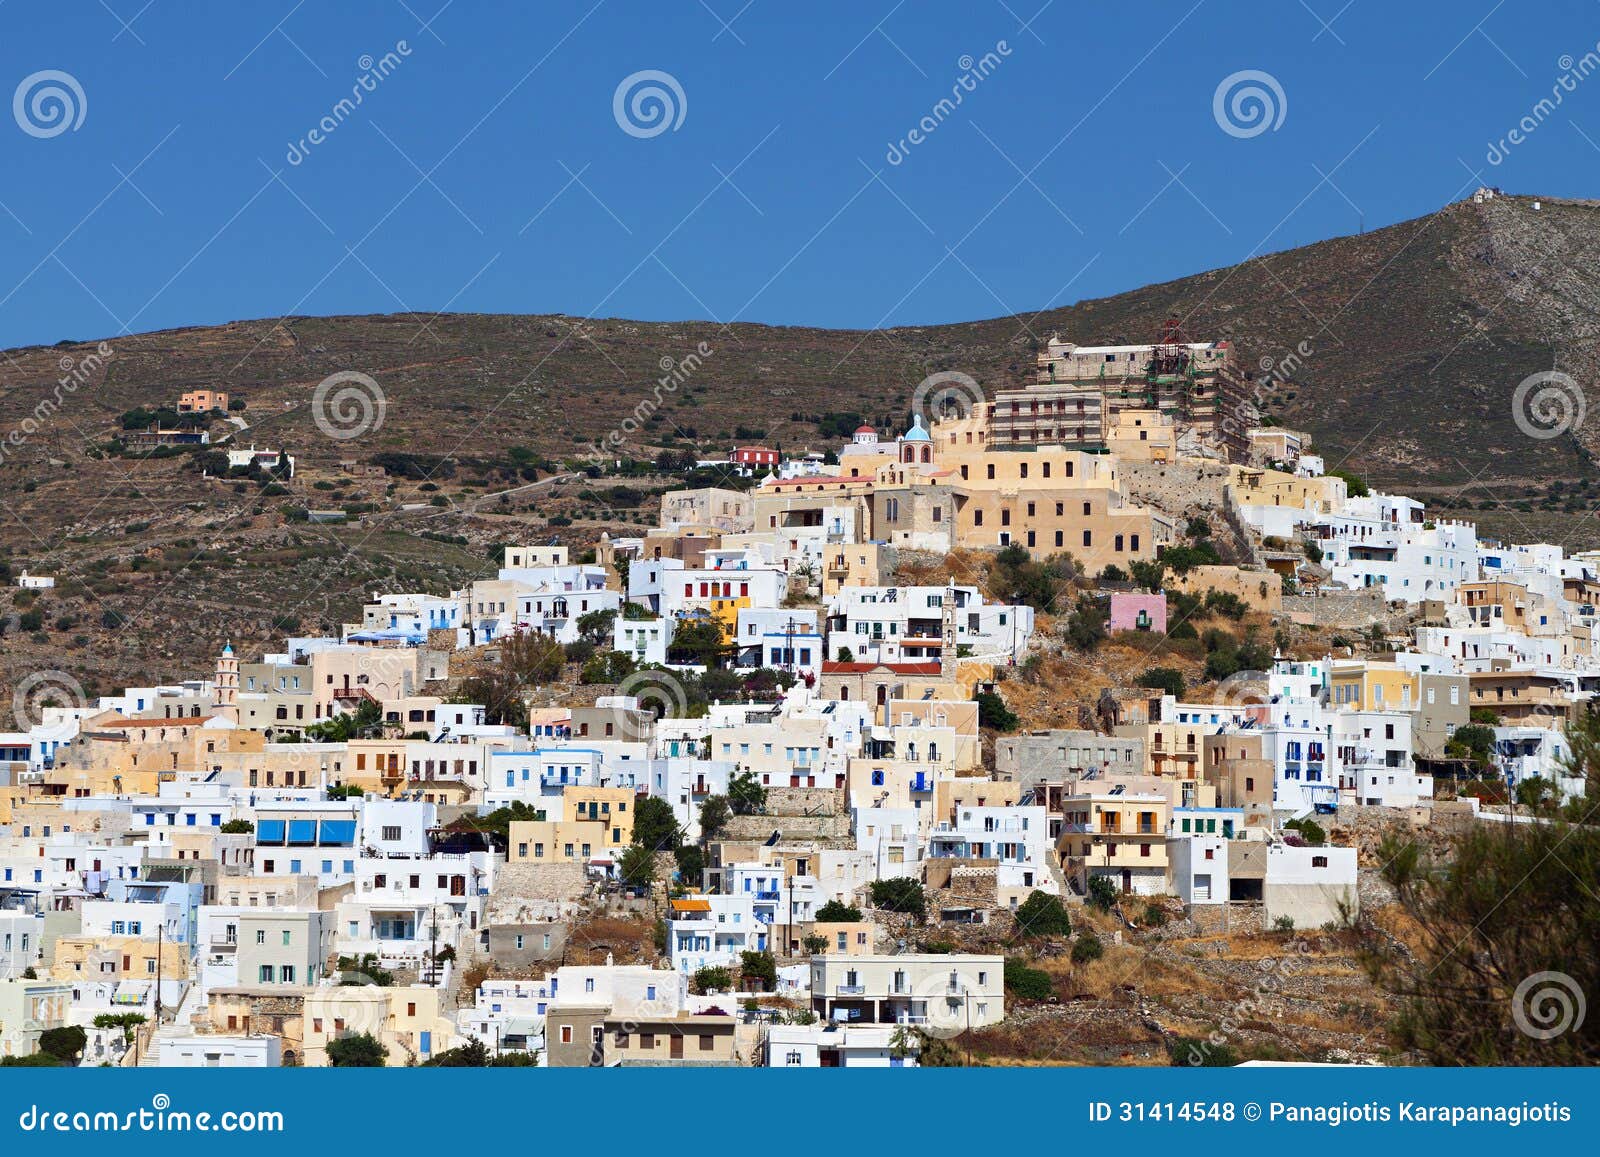 syros island in greece